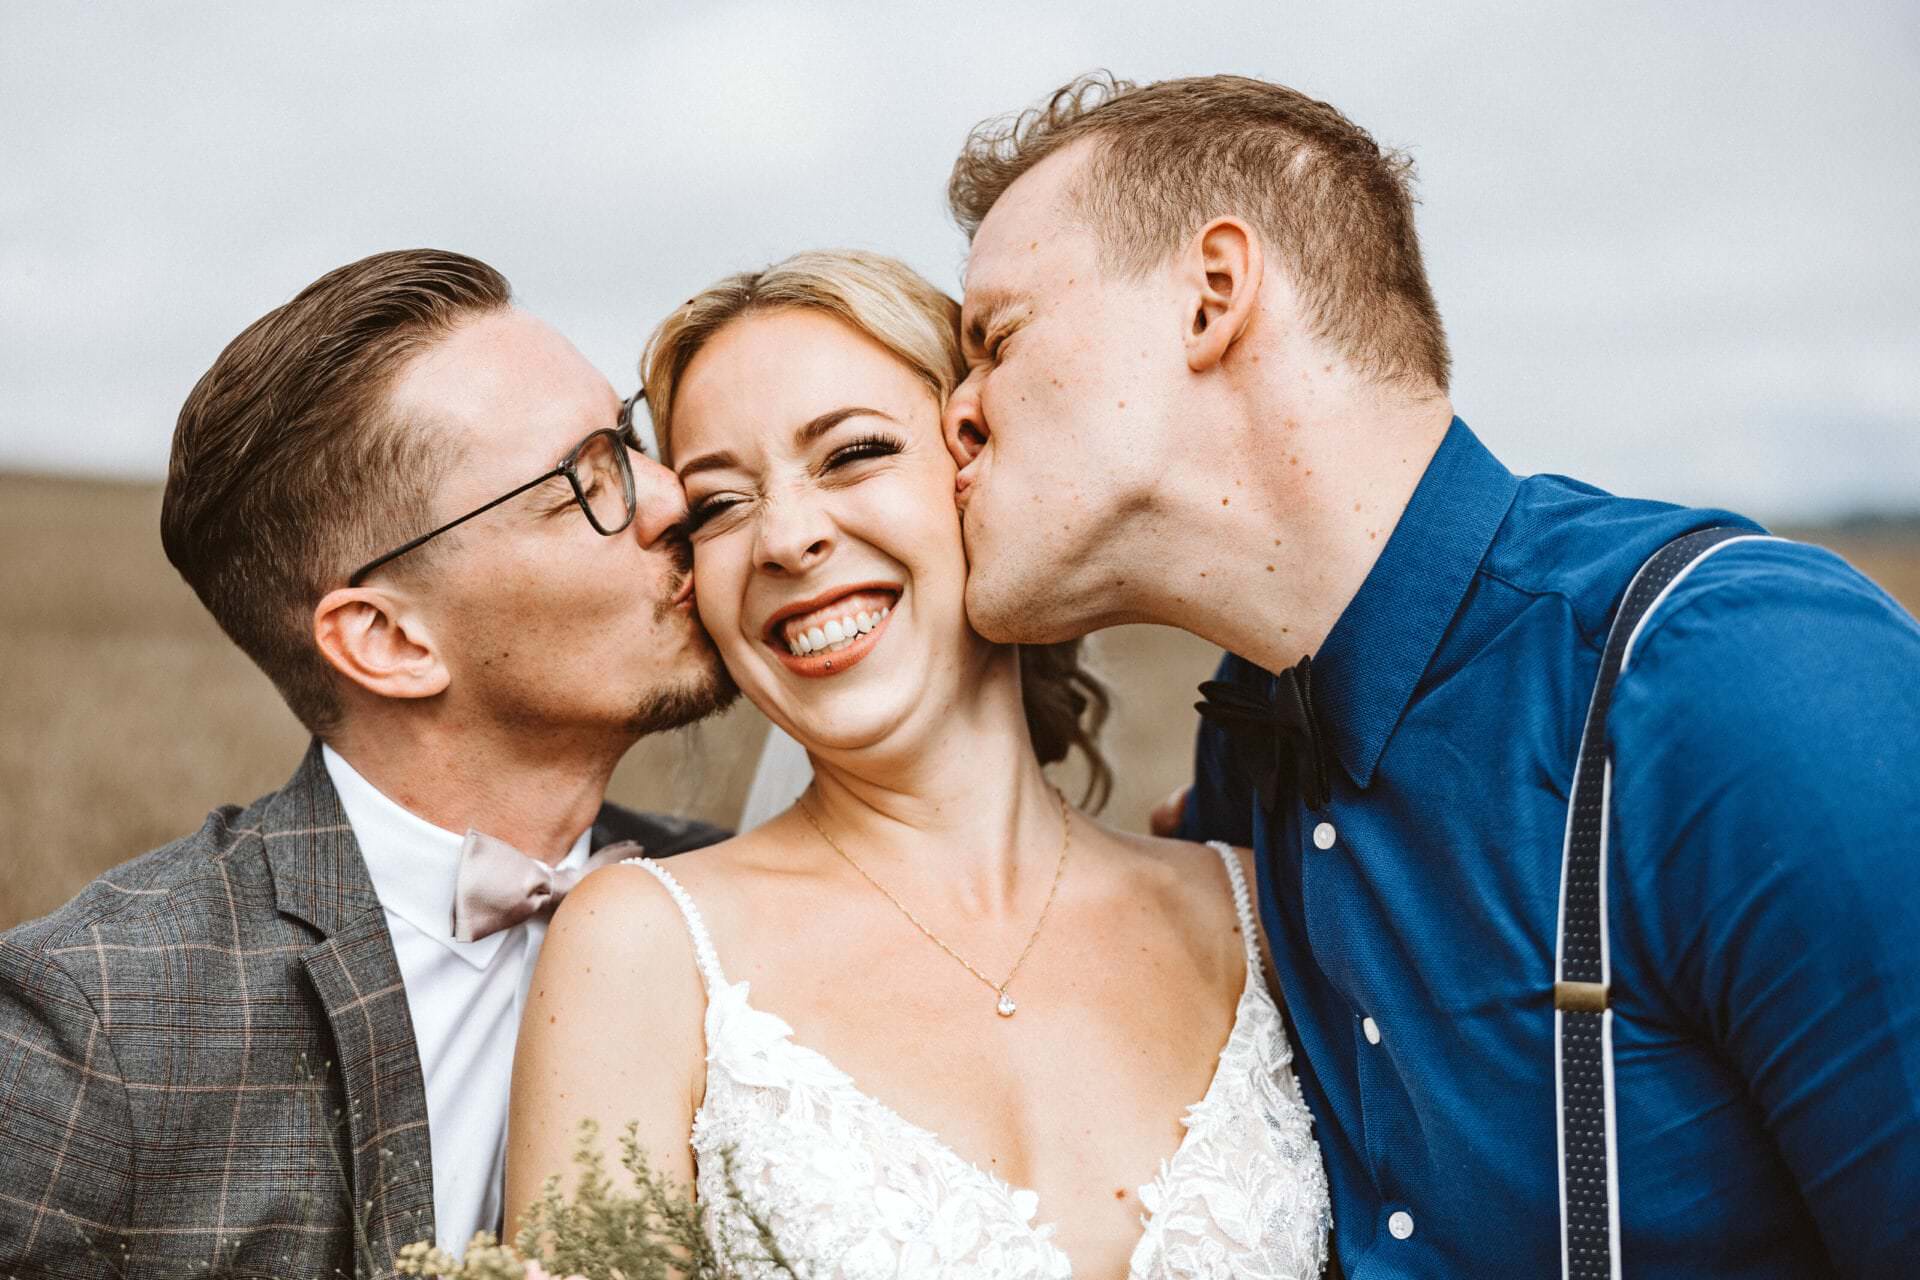 Hochzeitsfotograf Wesel Hochzeit Heiraten Hochzeitsfotos - Braut wird von Trauzeuge und Bräutigam auf die Wange geküsst. Die Braut lächelt